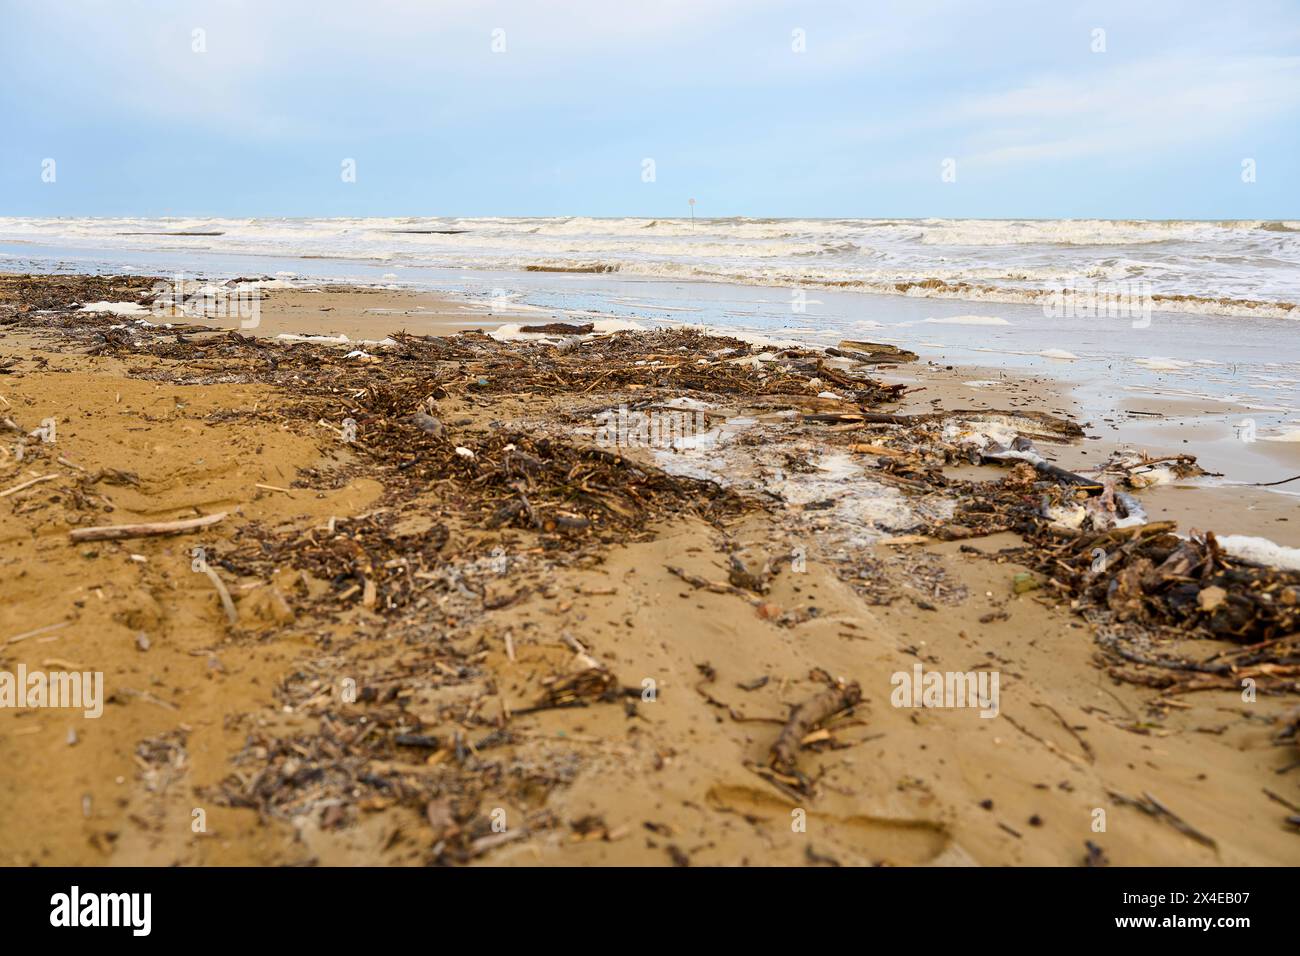 Lido di Jesolo, Italien - 2. Mai 2024: Nach einem Sturm verstreut. Die Wellen haben Holz und Plastik aus dem Meer gespült. Verschmutzungskonzept *** Verschmutzer Strand nach einem Sturm. Die Wellen haben aus dem Meer Treiholz und Plastik angespült. Umweltverschmutzungskonzept Stockfoto